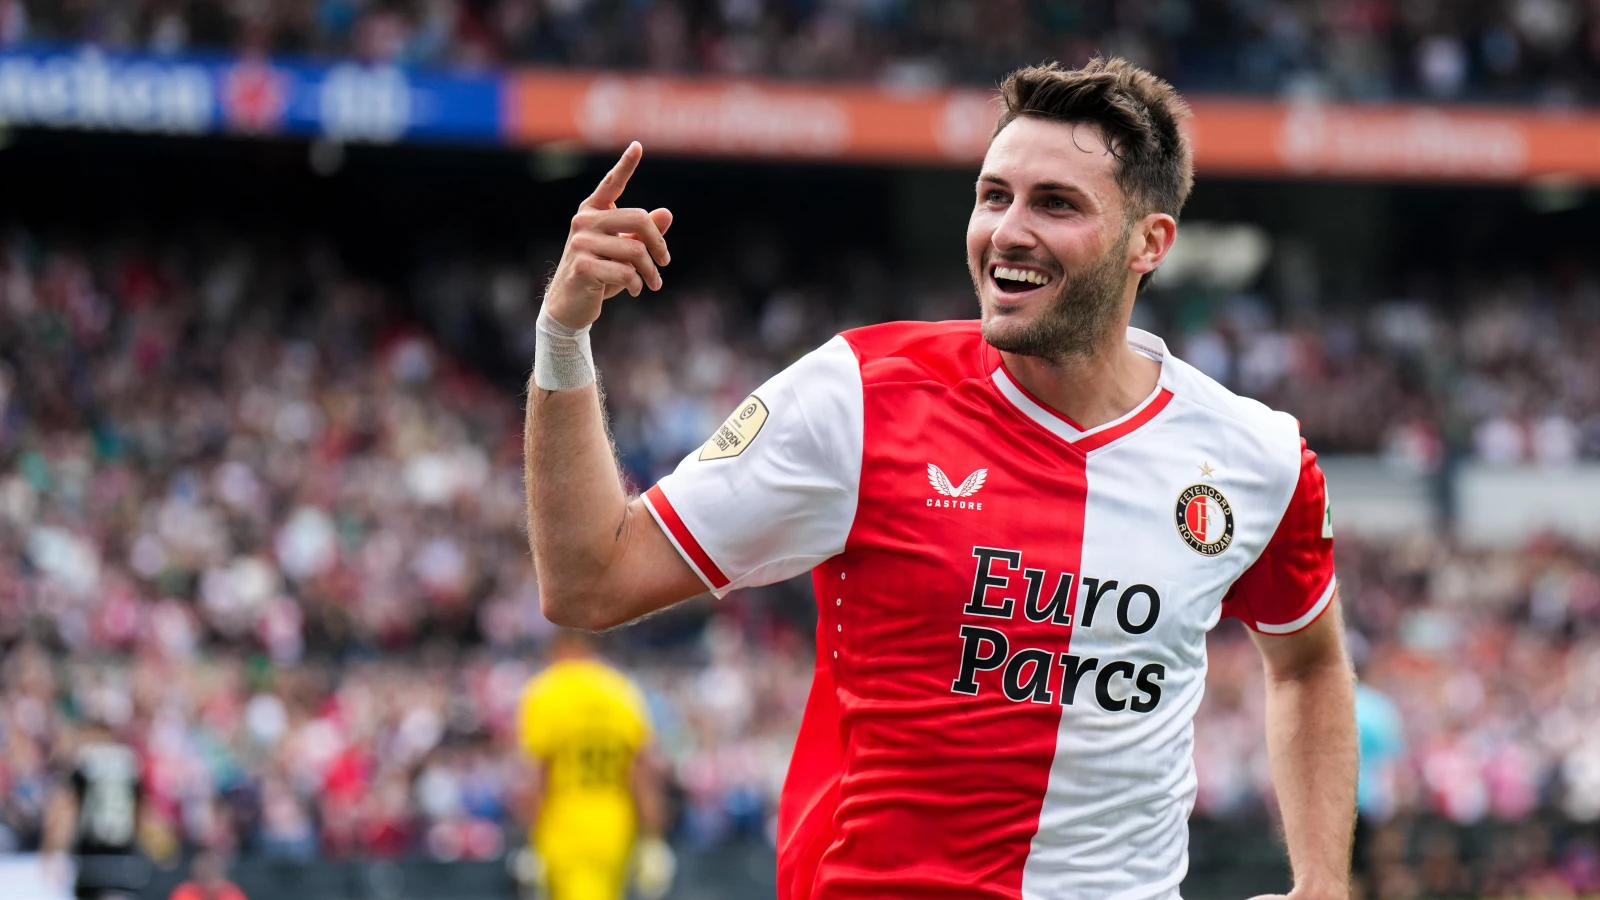 OFFICIEEL | Feyenoord verlengt contract Gimenez